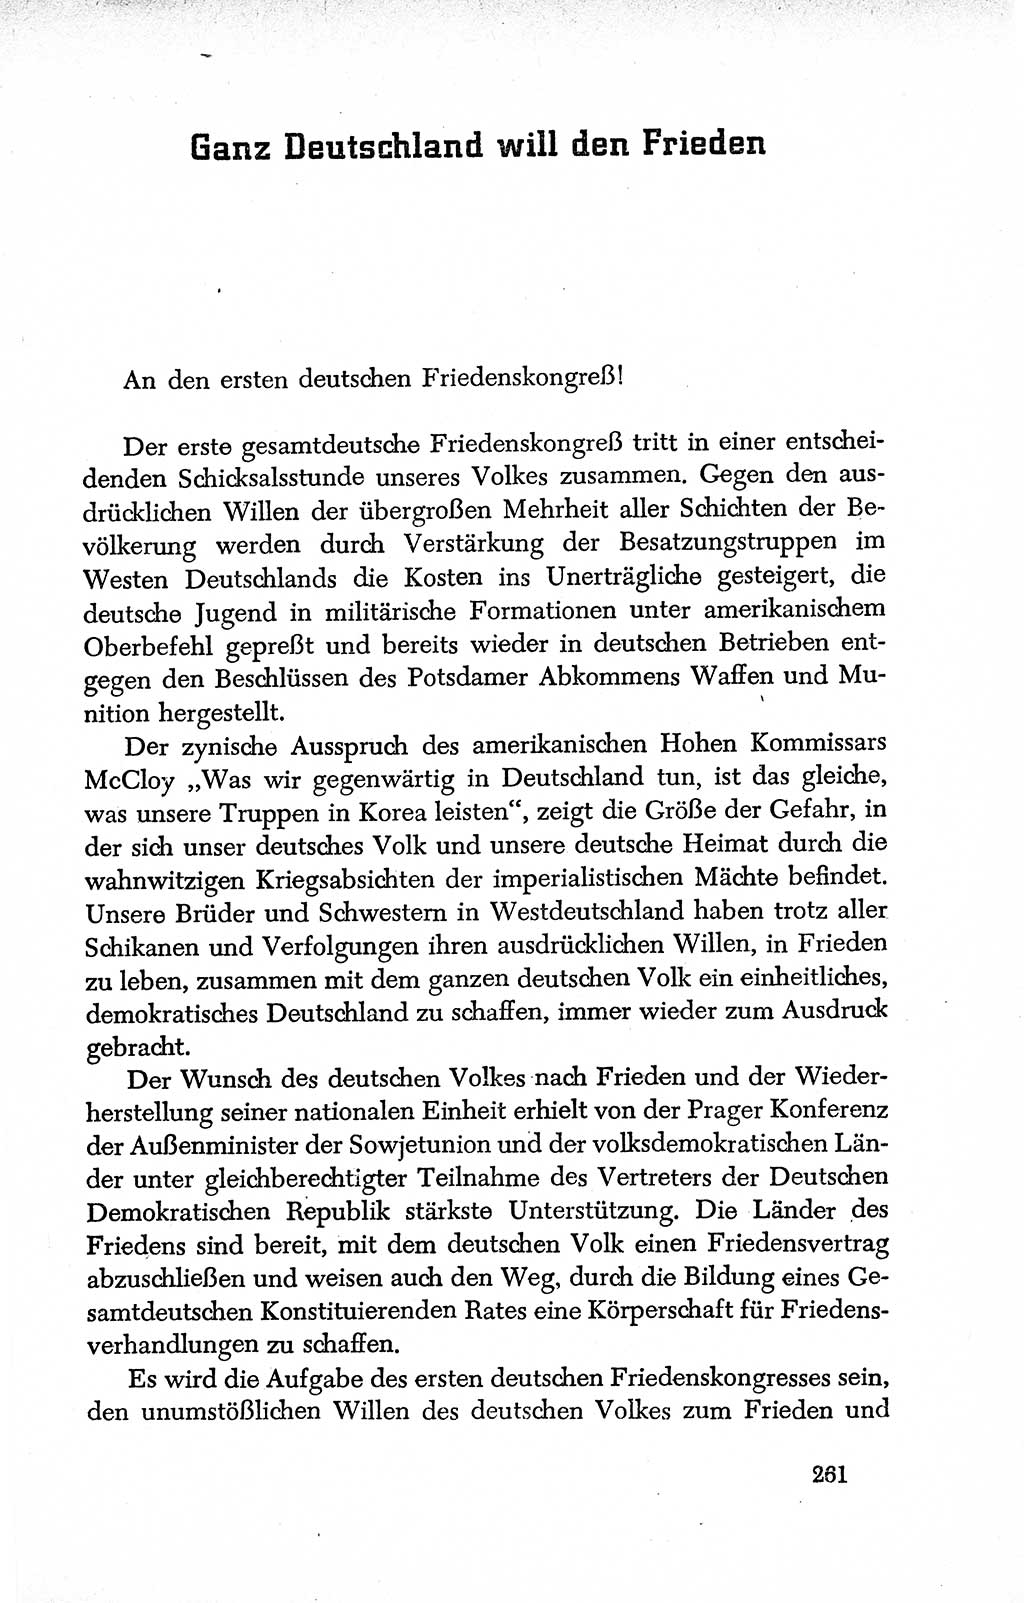 Dokumente der Sozialistischen Einheitspartei Deutschlands (SED) [Deutsche Demokratische Republik (DDR)] 1950-1952, Seite 261 (Dok. SED DDR 1950-1952, S. 261)